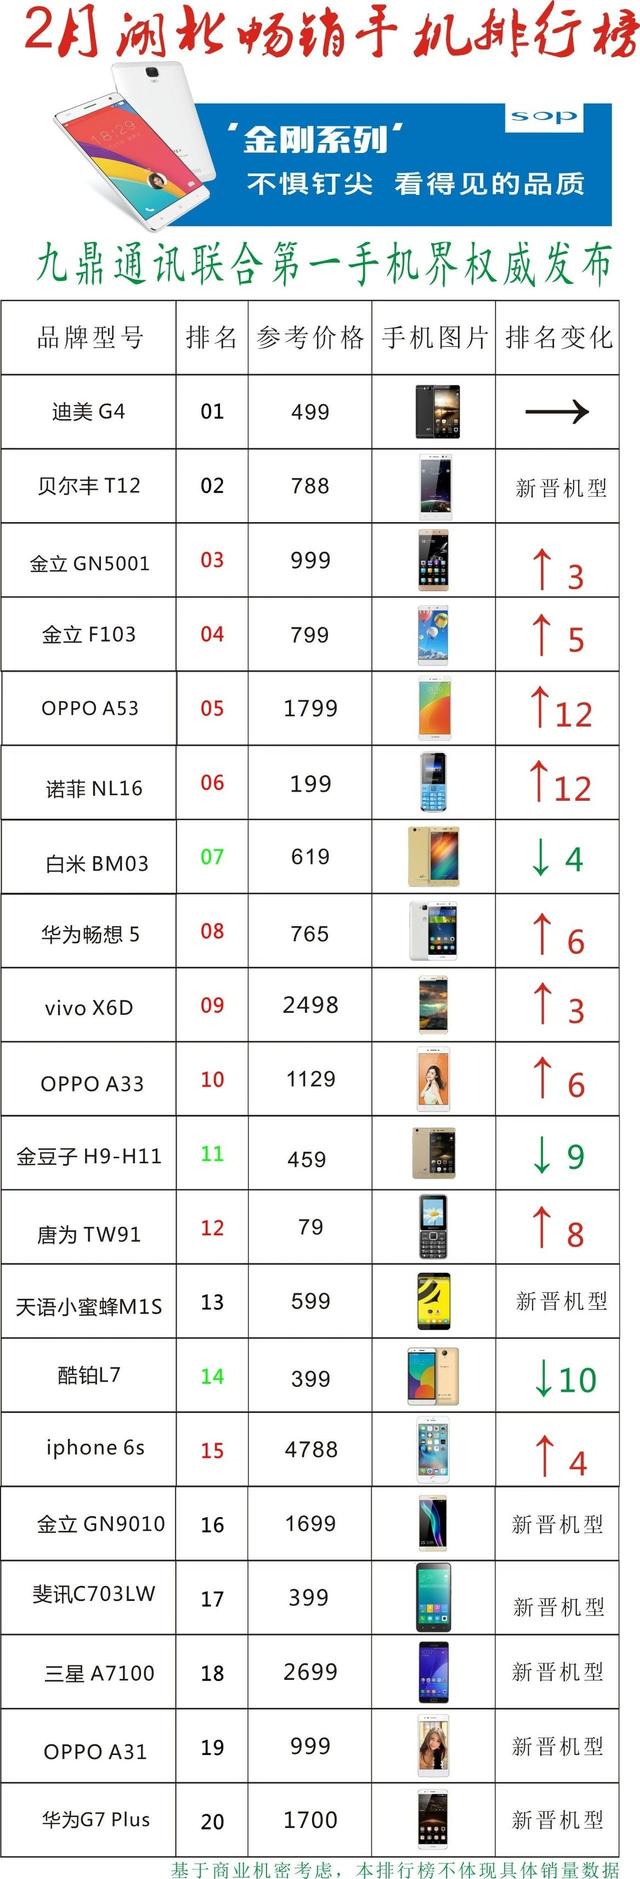 二月湖北省热销手机排行榜：三星A7100等七款型号首现总榜